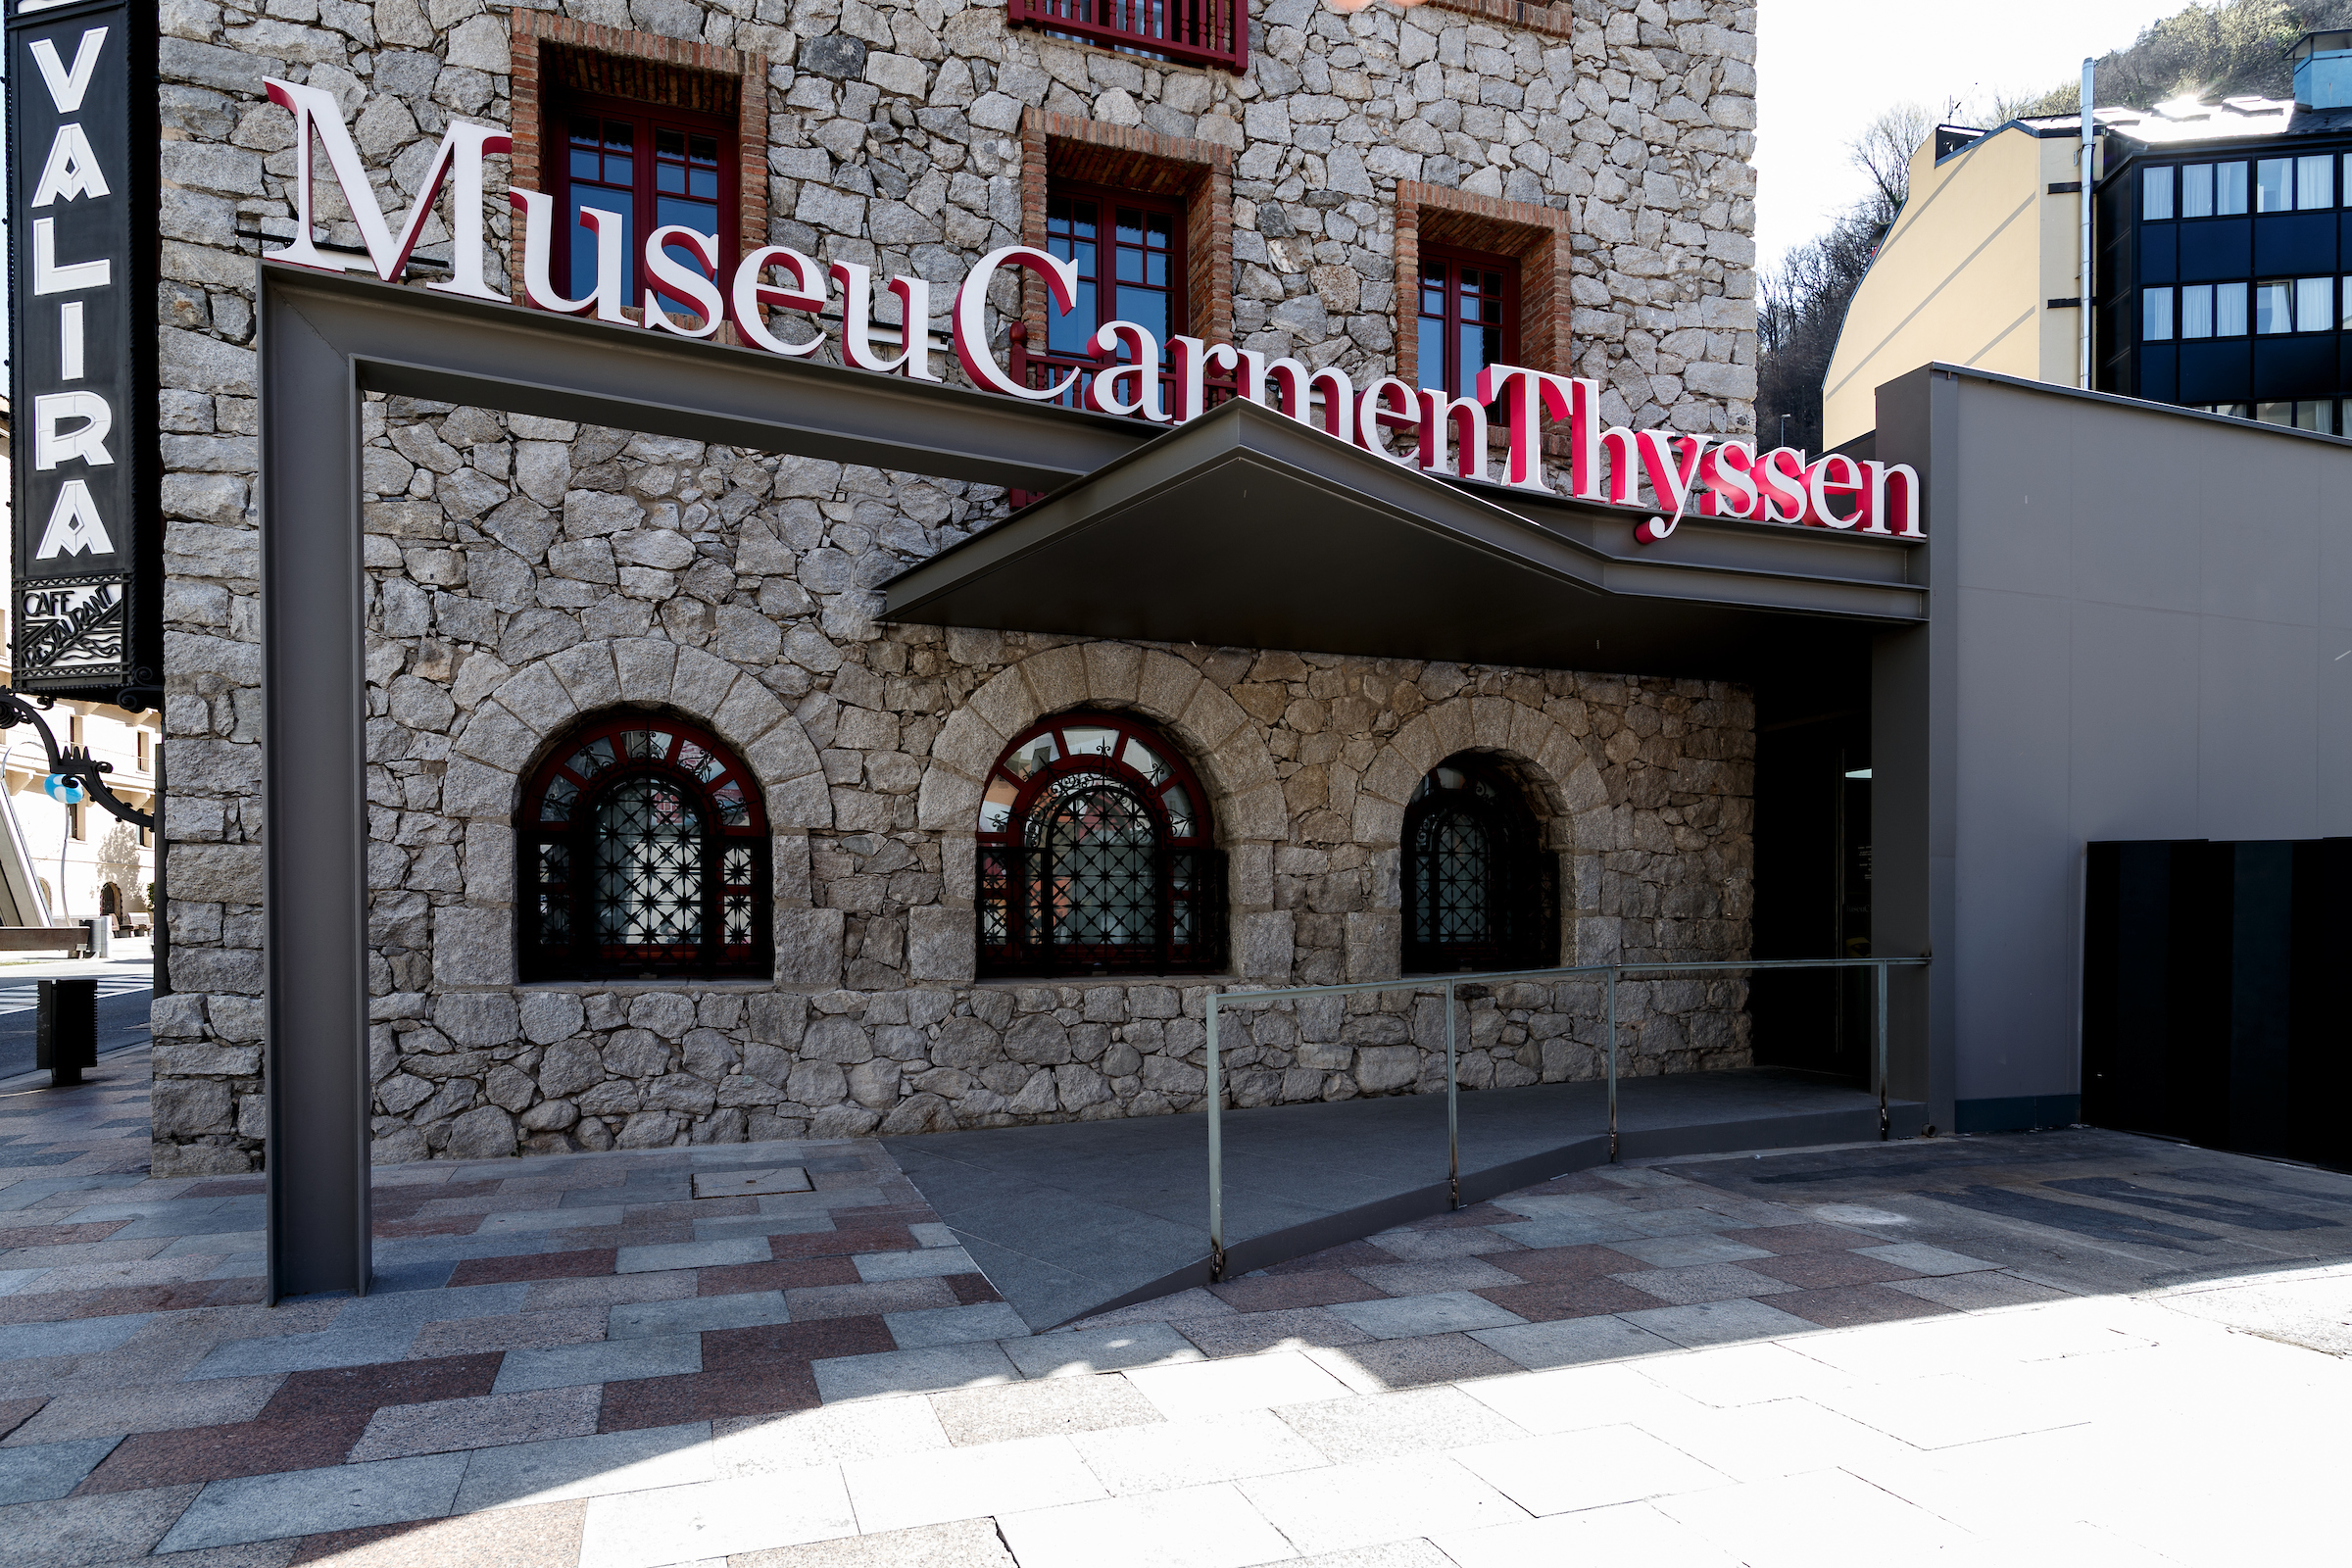 Museu Carmen Thyssen - MagazineHorse